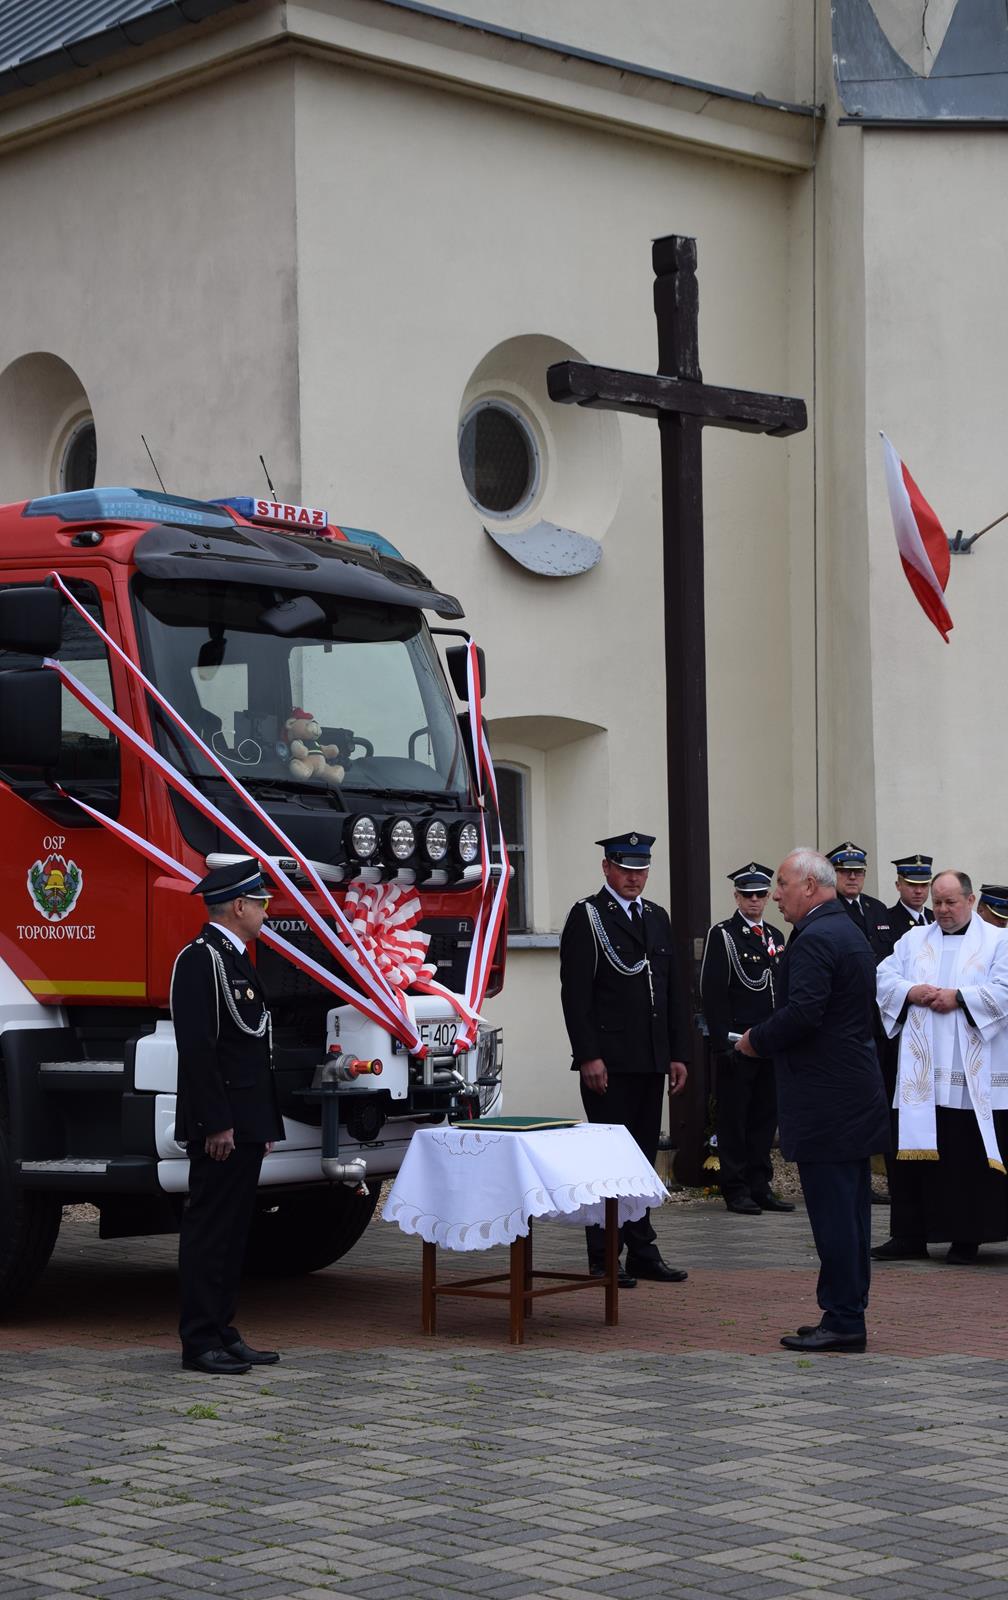 Zdjęcie przed kościołem pw. Św. Mikołaja w Targoszycach podczas poświęcenia wozu strażackiego OSP Toporowice